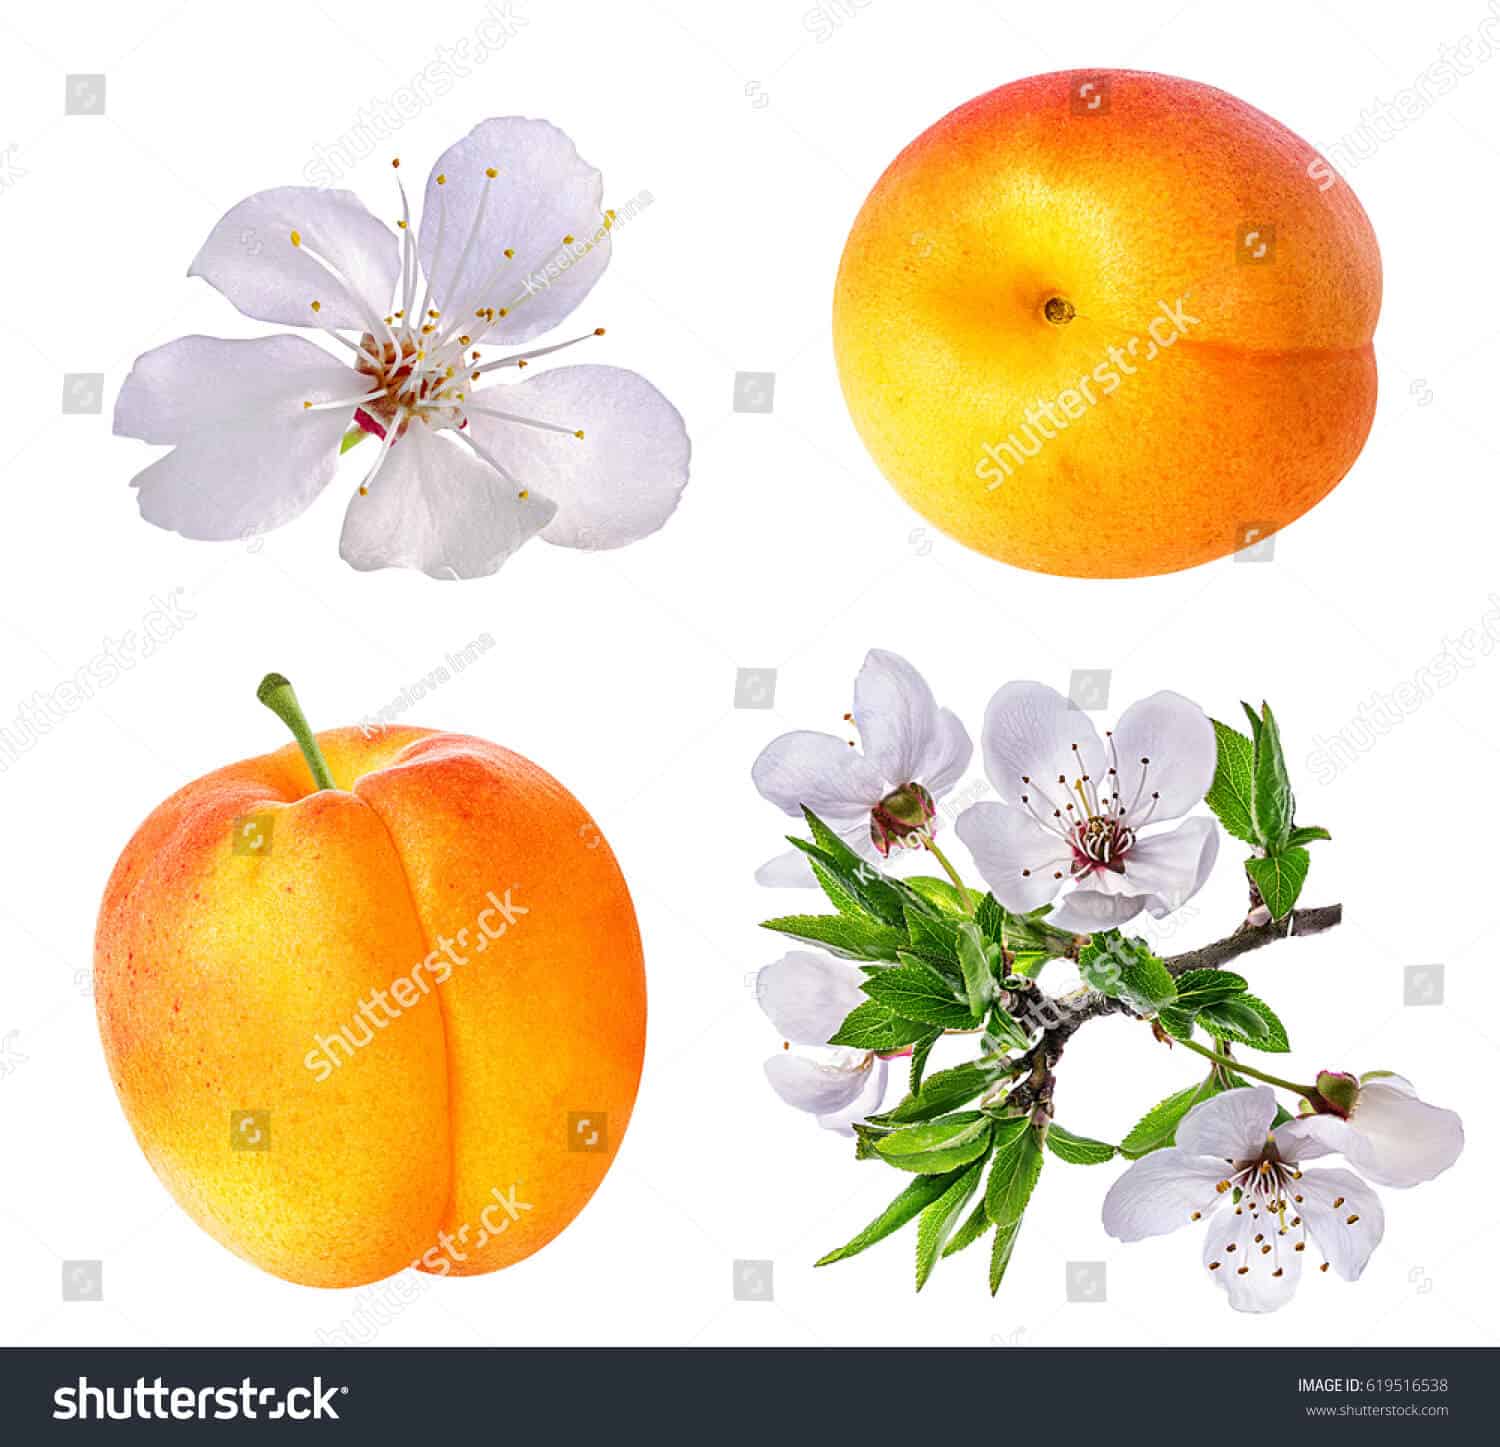 63 ngàn hình ảnh hoa mai trắng tuyệt đẹp chất lượng cao trên Shutterstock